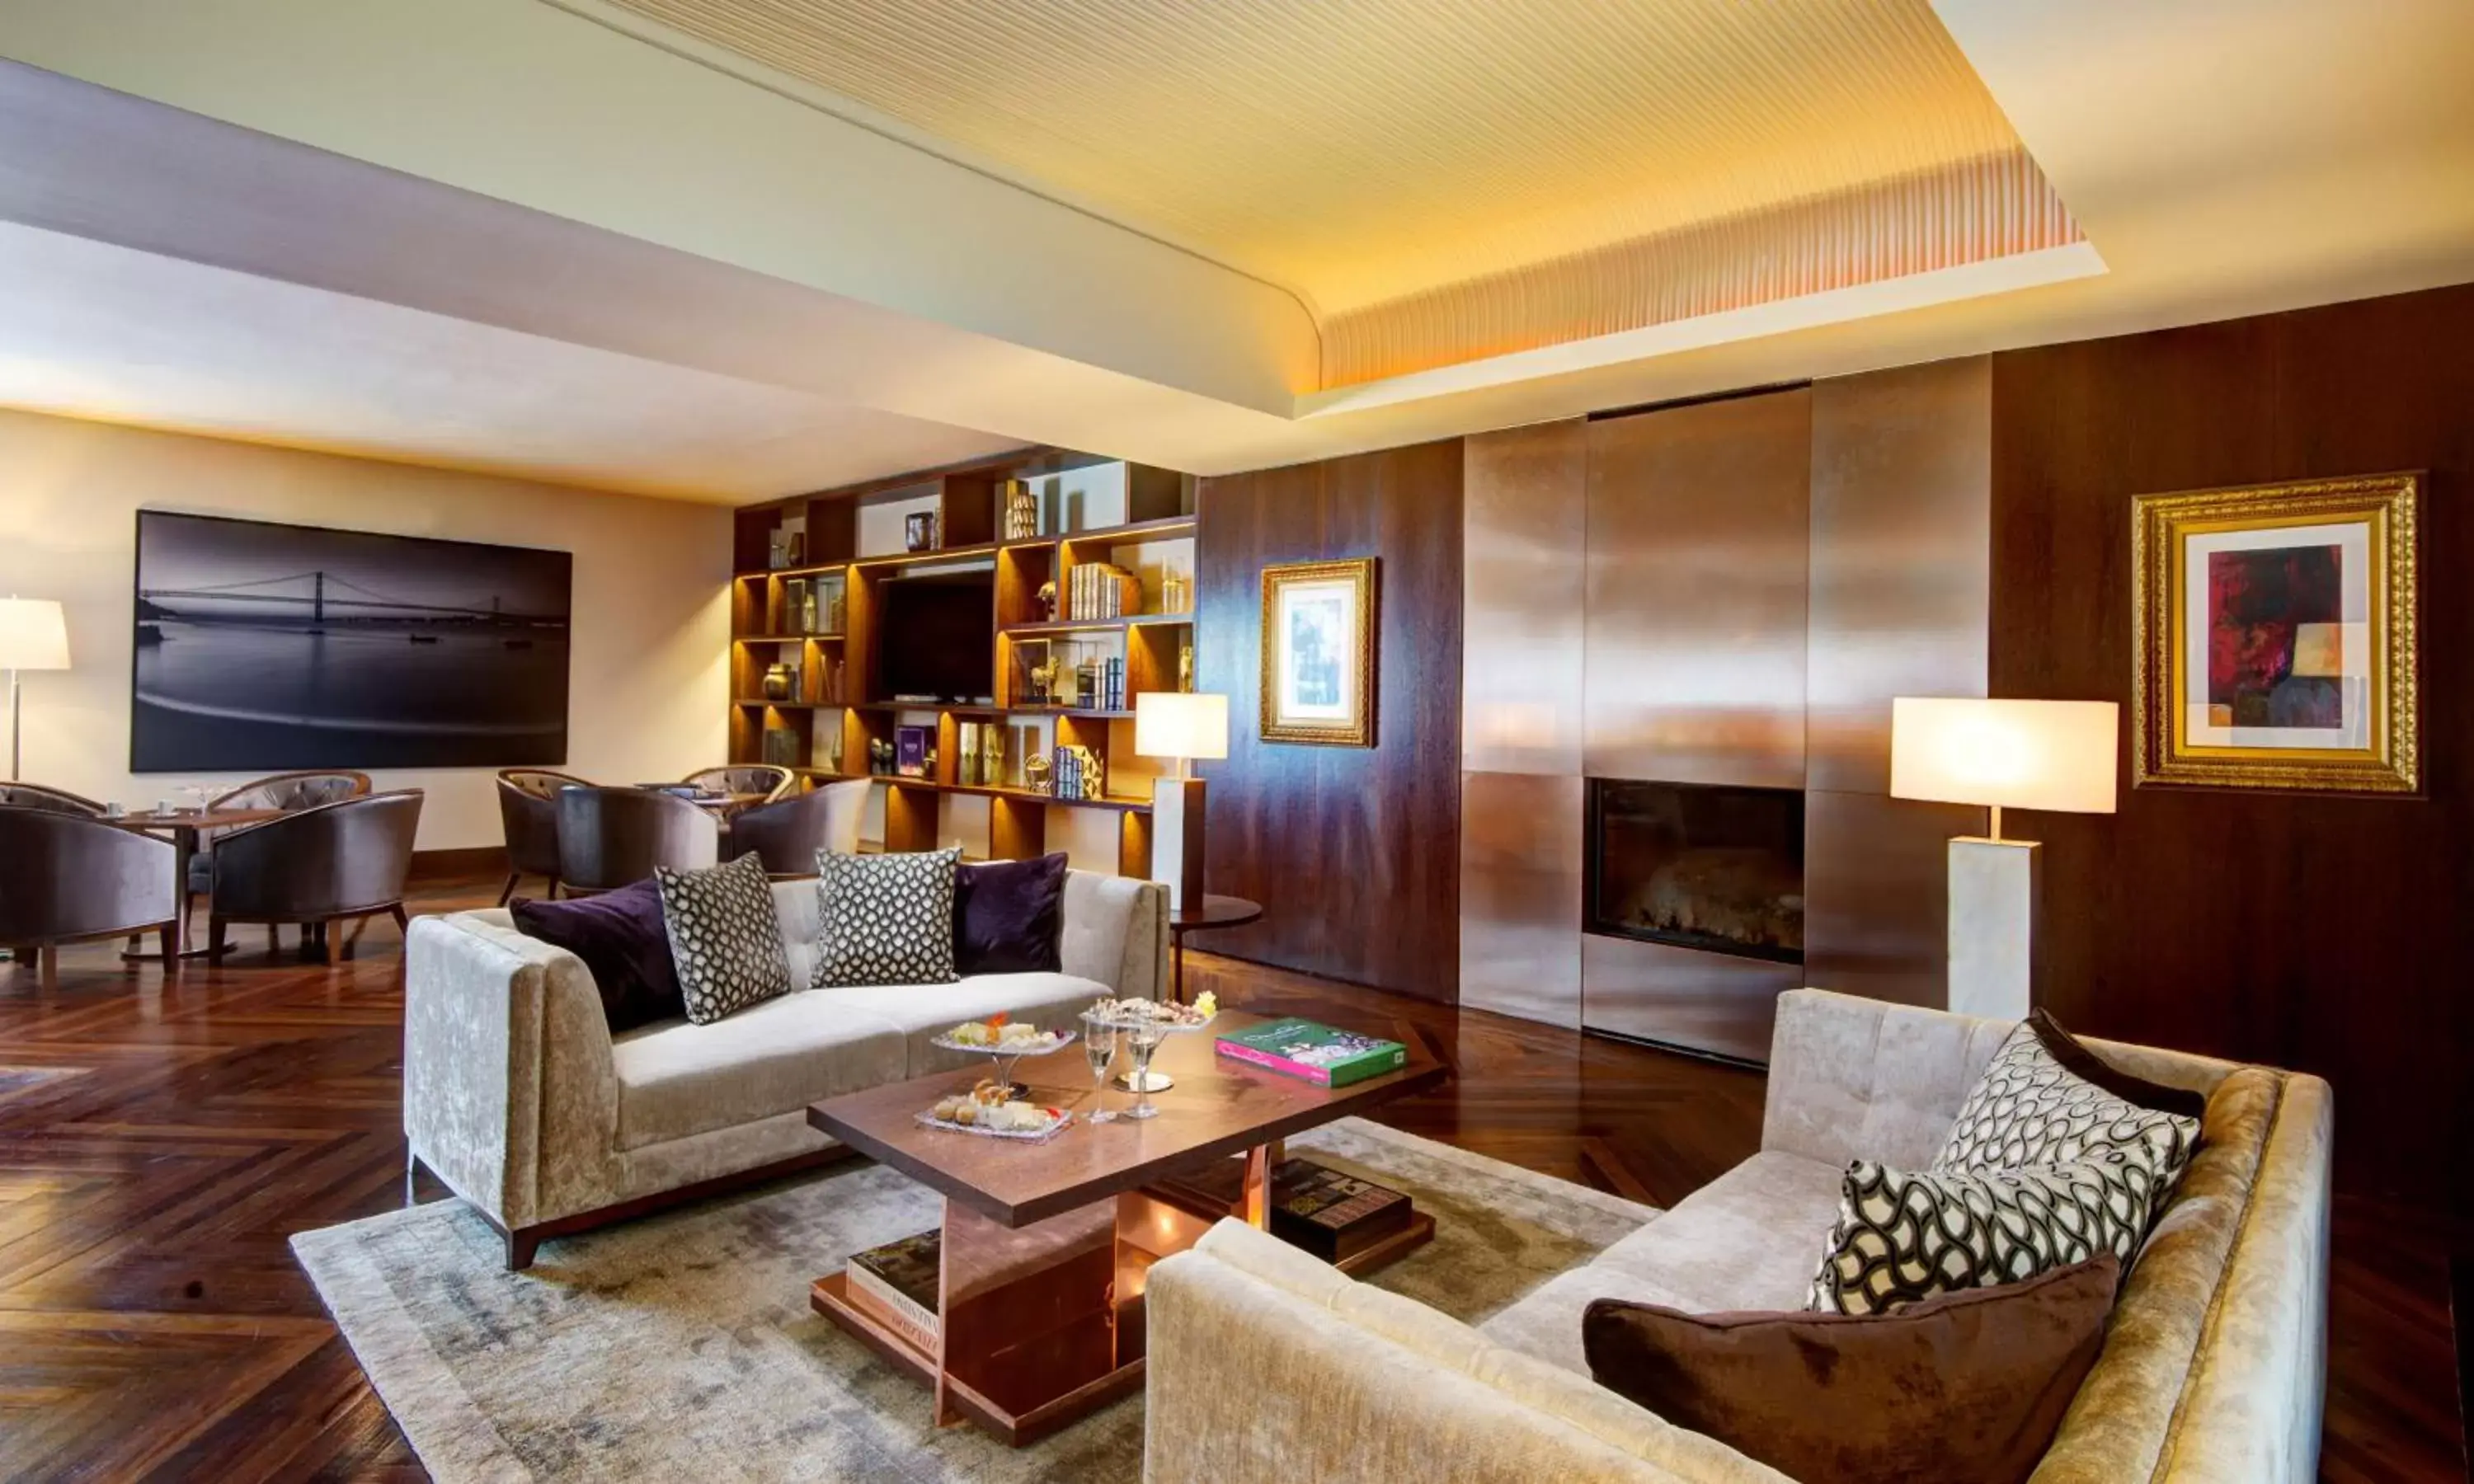 Lounge or bar, Seating Area in Tivoli Avenida Liberdade Lisboa – A Leading Hotel of the World